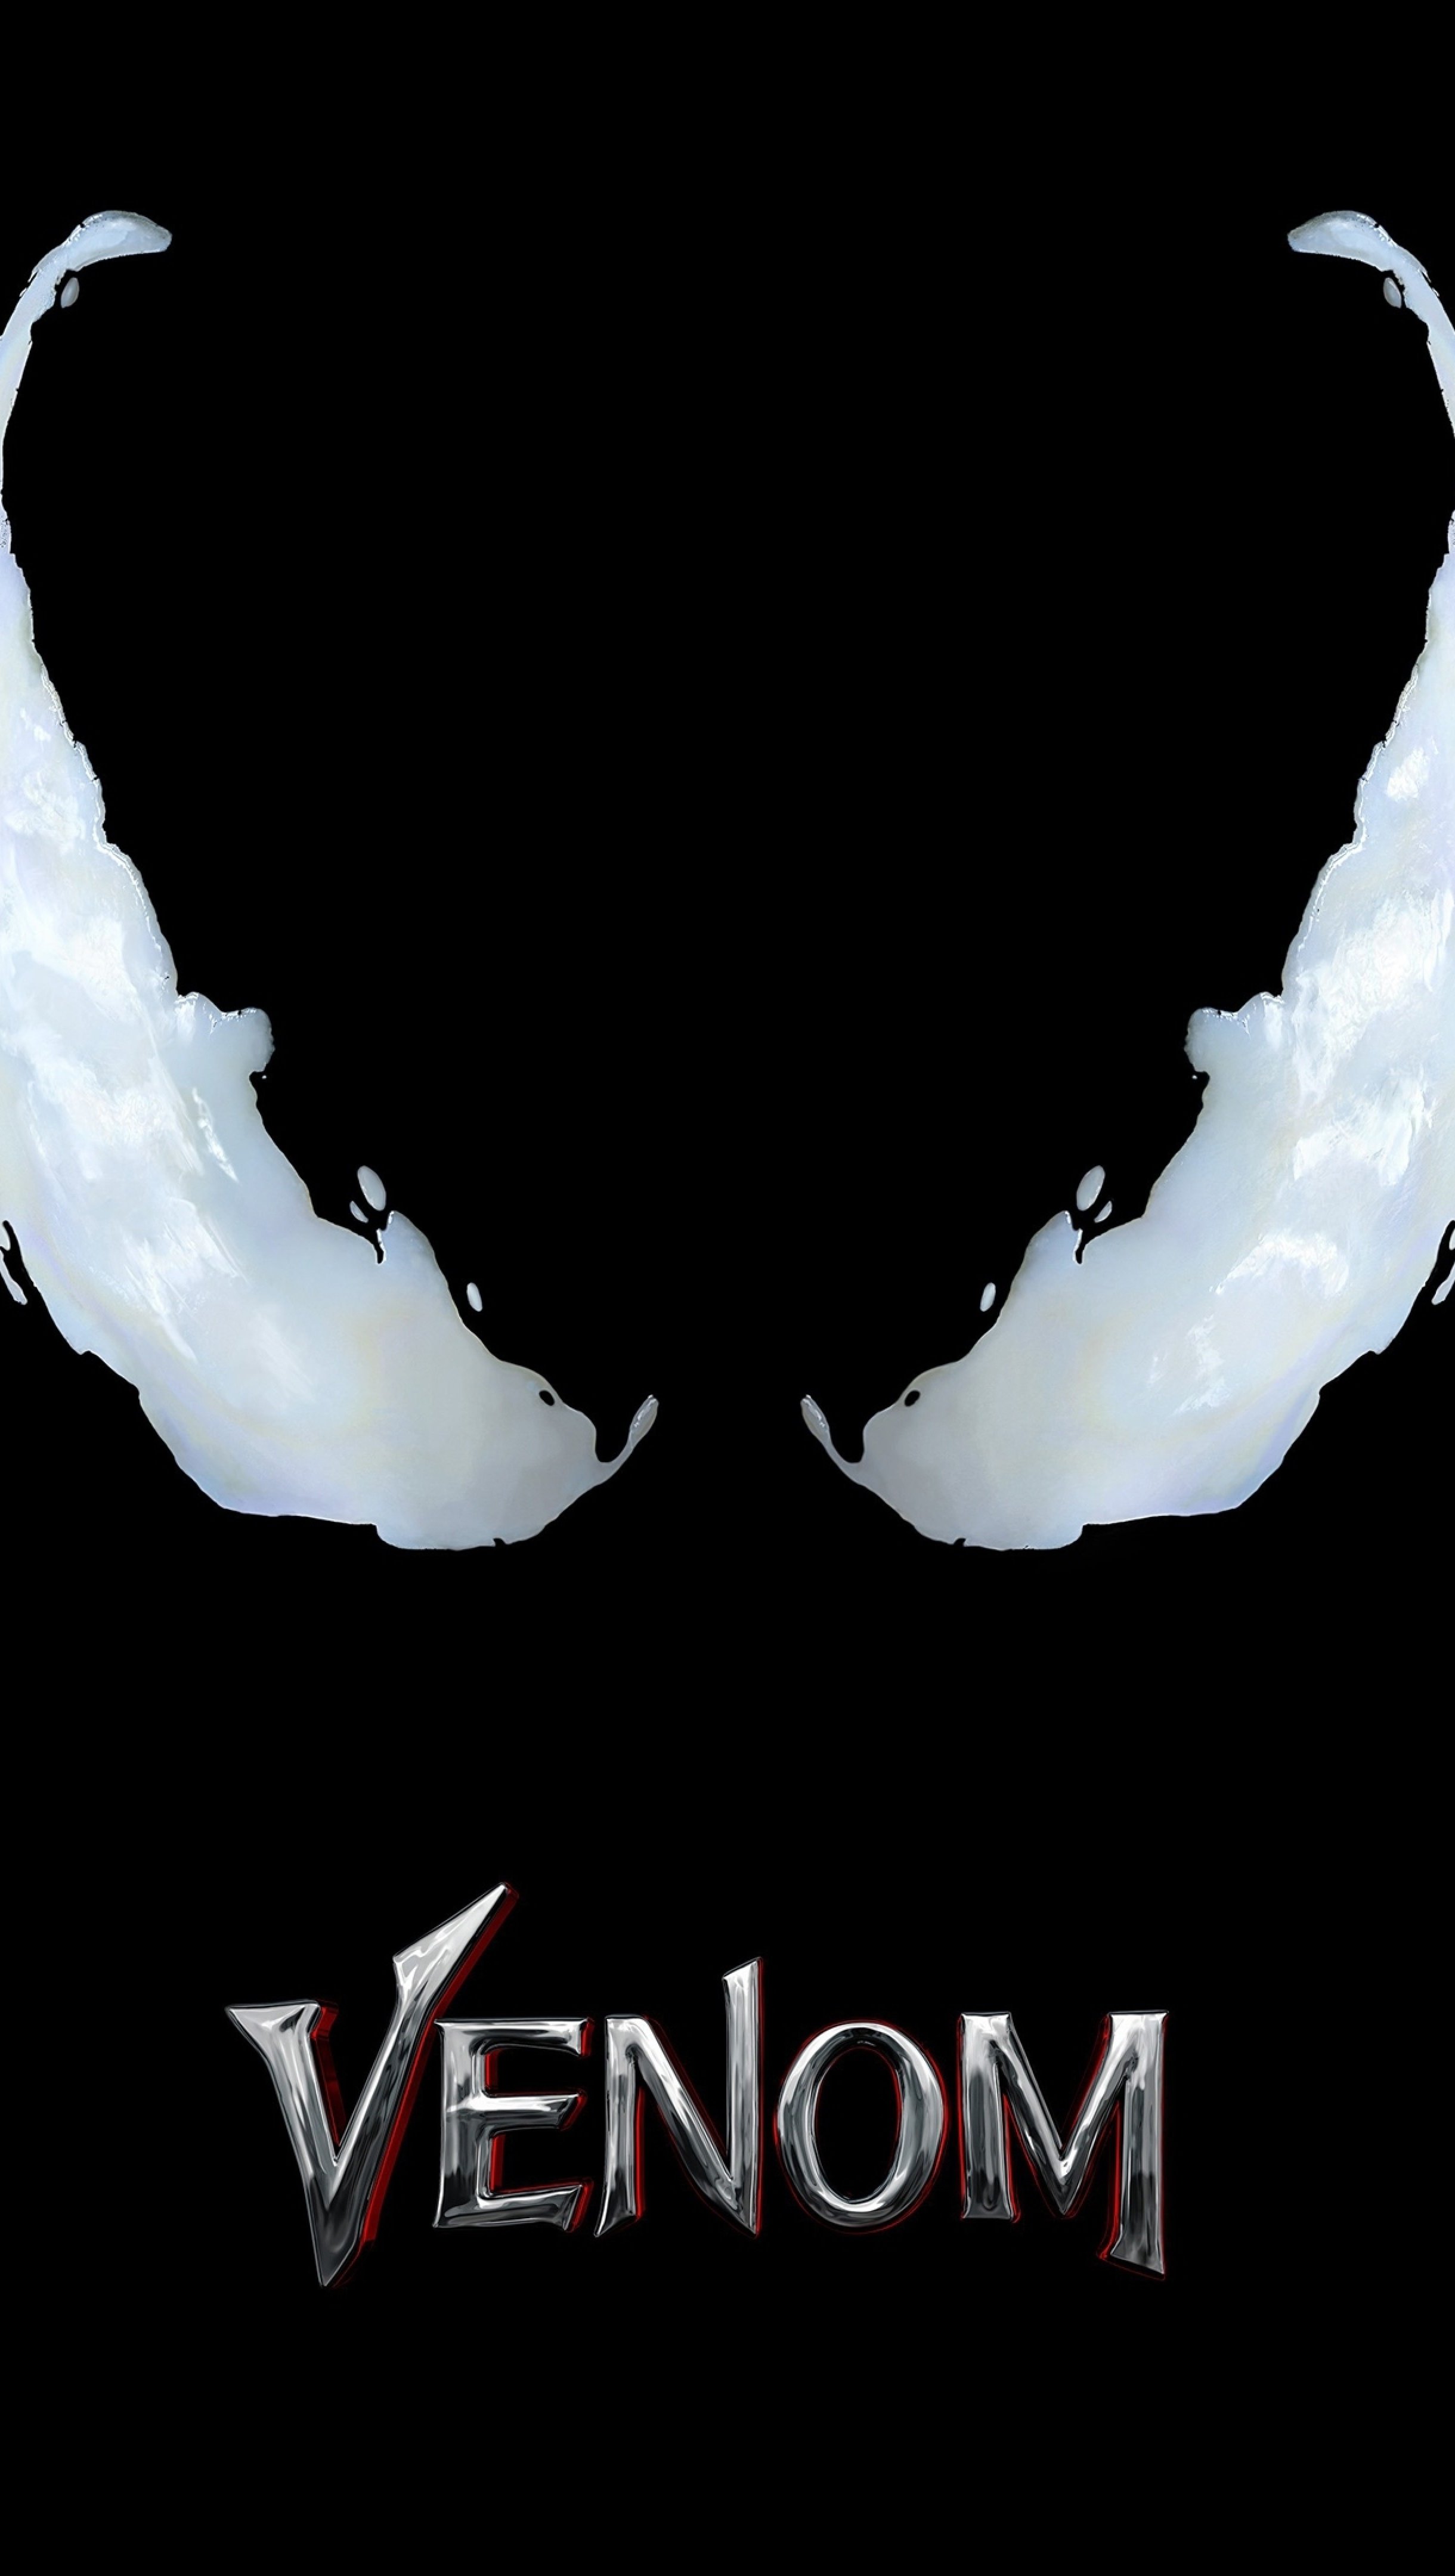 Venom Minimalist Movie Poster Wallpaper 8k Ultra HD